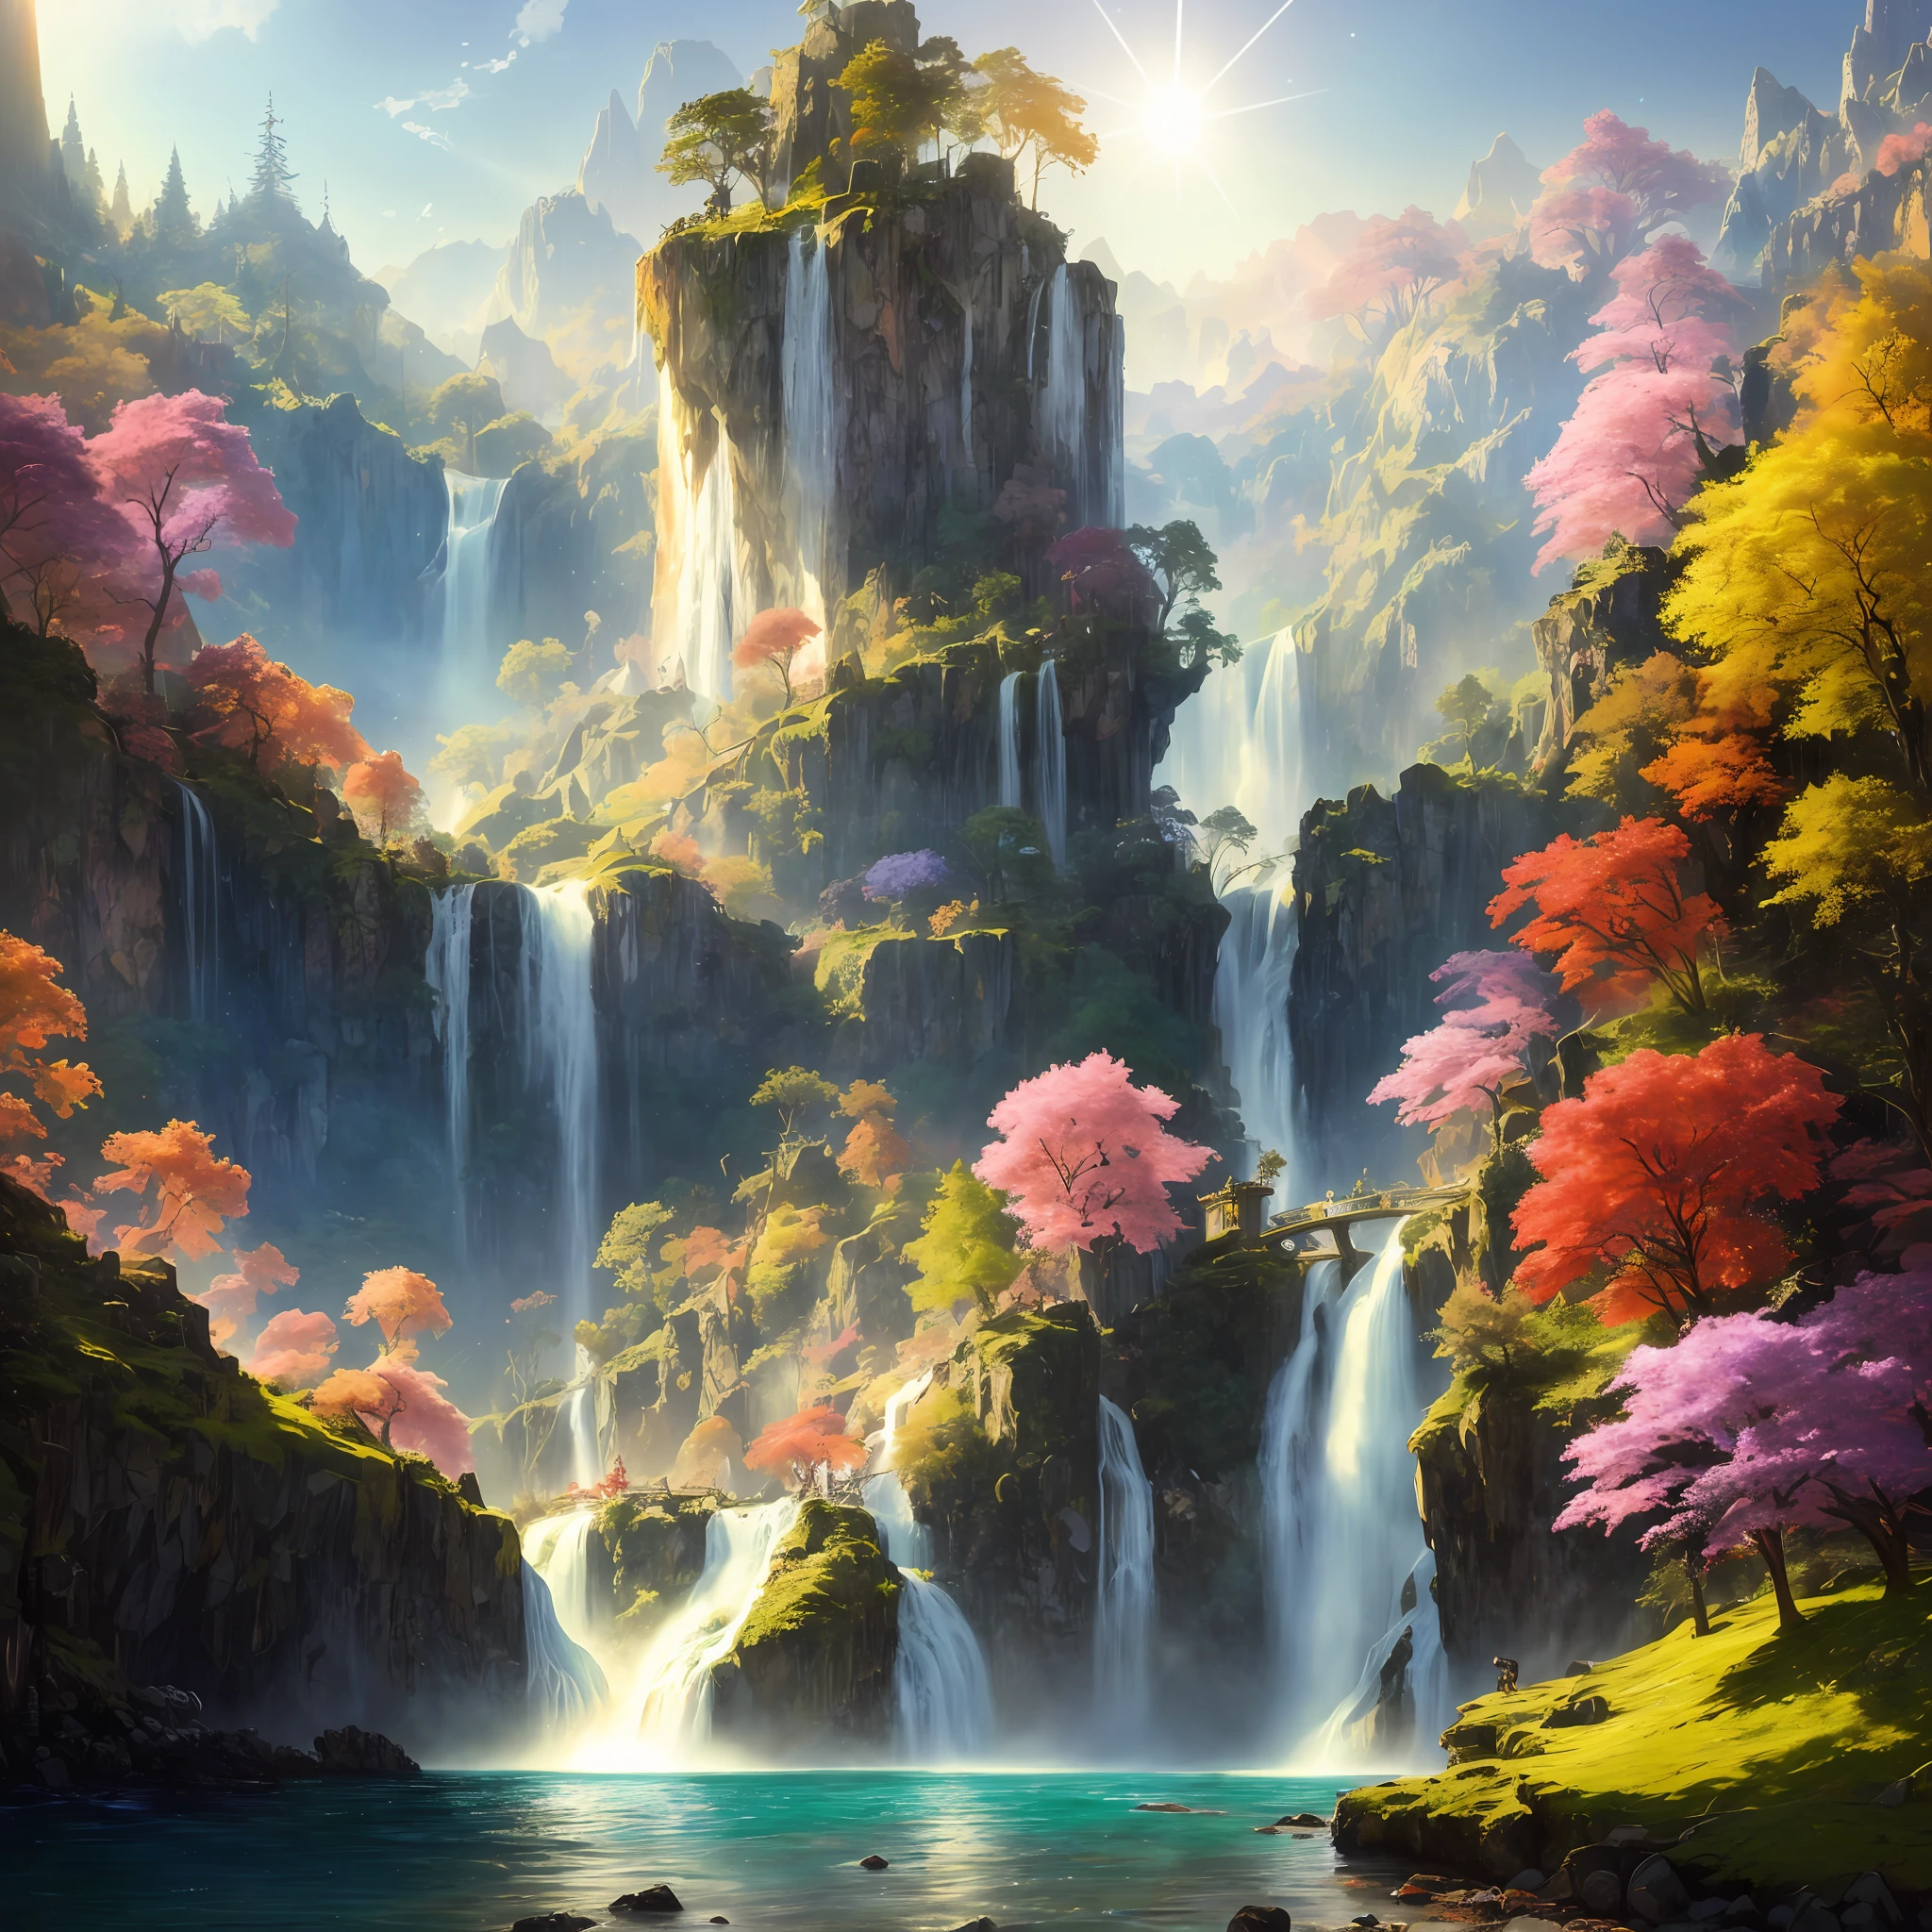 アナログスタイル,クロマV5,ンヴィンクパンク,(非常に詳細な CG ユニティ 8k 壁紙),岩だらけの崖から流れ落ちる明るく雄大な滝のイラスト, 輝く太陽に照らされて, 水が落ちるとキラキラ光る, 虹色に輝く, 周囲の風景は緑豊かで青々としている, 背の高い木々と野生の花々,受賞歴のある写真, 色収差; 幾何学的形状; ボケ, 被写界深度, 写実的な, 詳細, 咲く, 高解像度 , ジョン・シンガー・サージェントの油絵, フレデリック・チャーチ, トーマス・モラン,アートステーションでトレンド, CGSociety で話題, アート：ミッドジャーニー